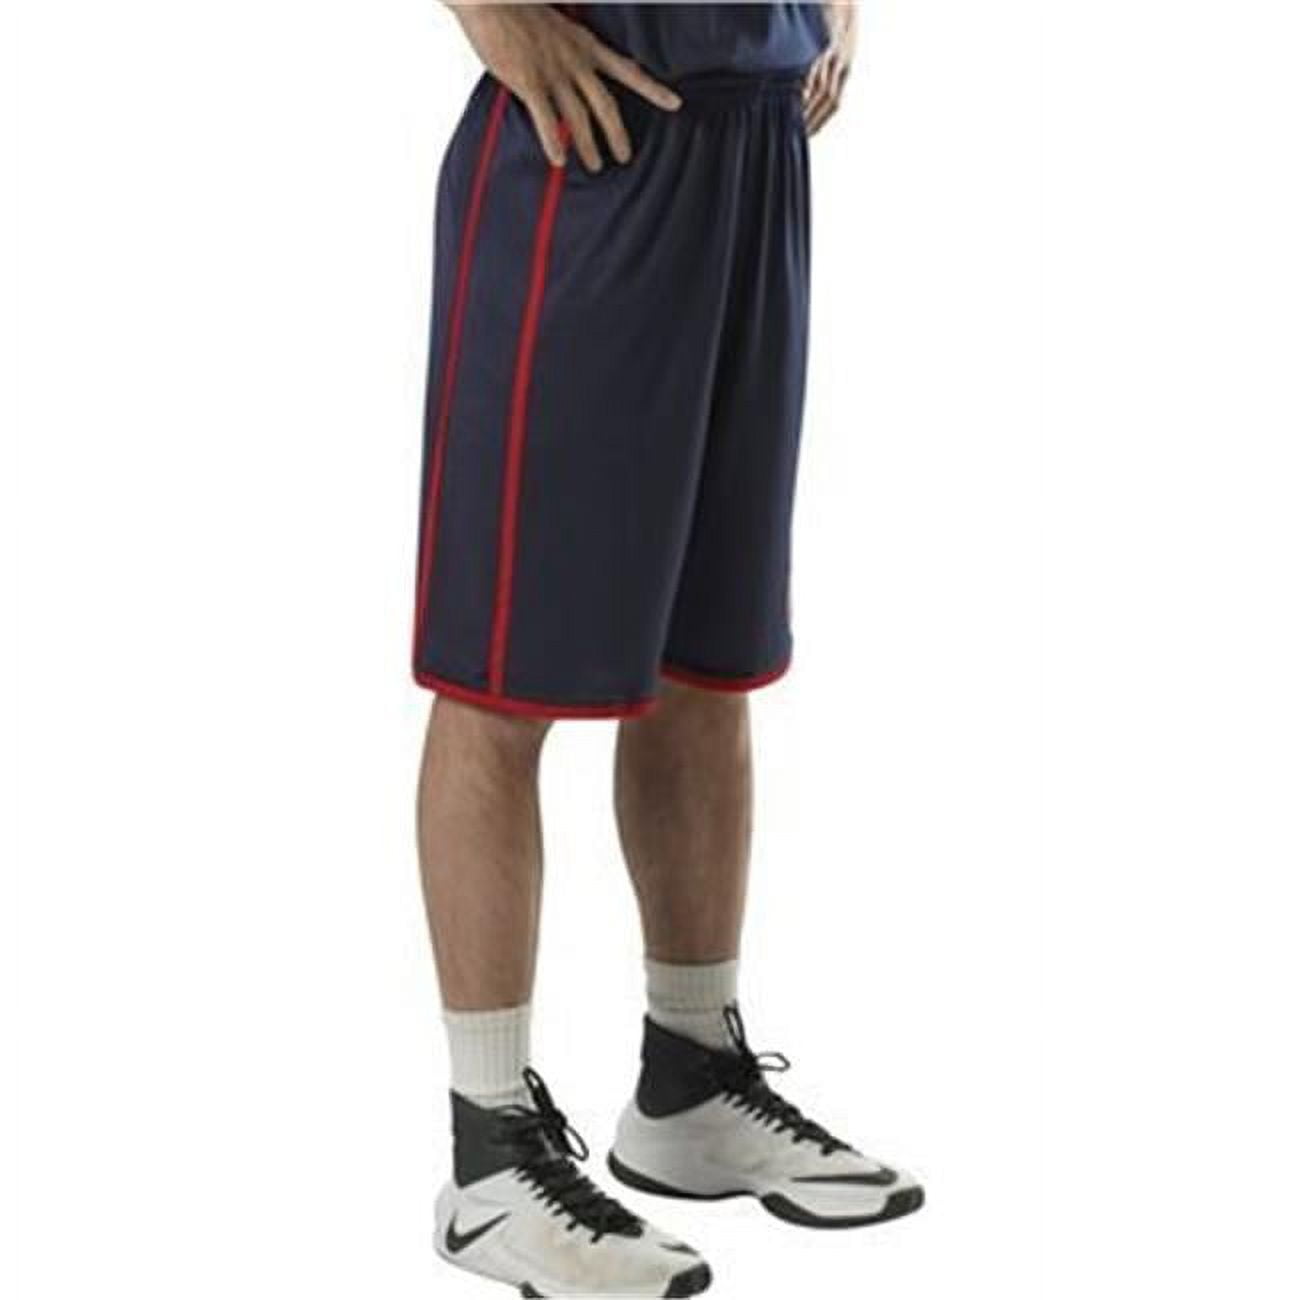 Umbro Basketball Dazzle Shorts Vintage White Black Small